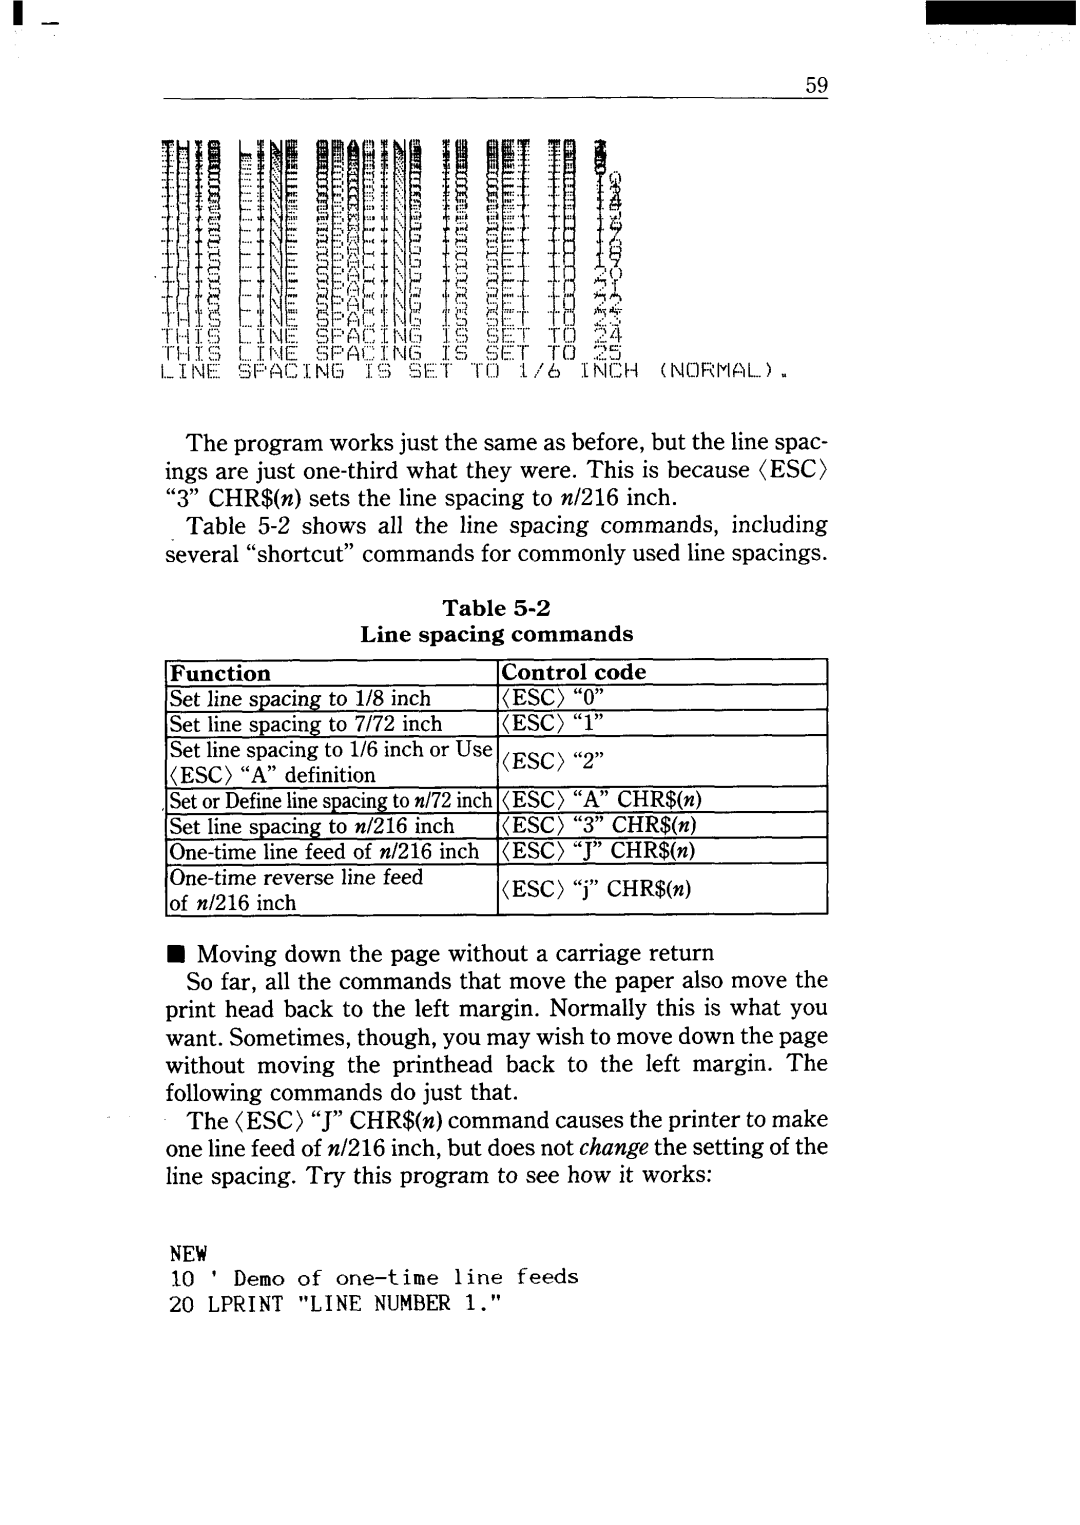 Star Micronics NX-15 user manual Setlinespacingto1/8inch, Esc“O”, Setlinespacingto7/72inch, ESC“l” 